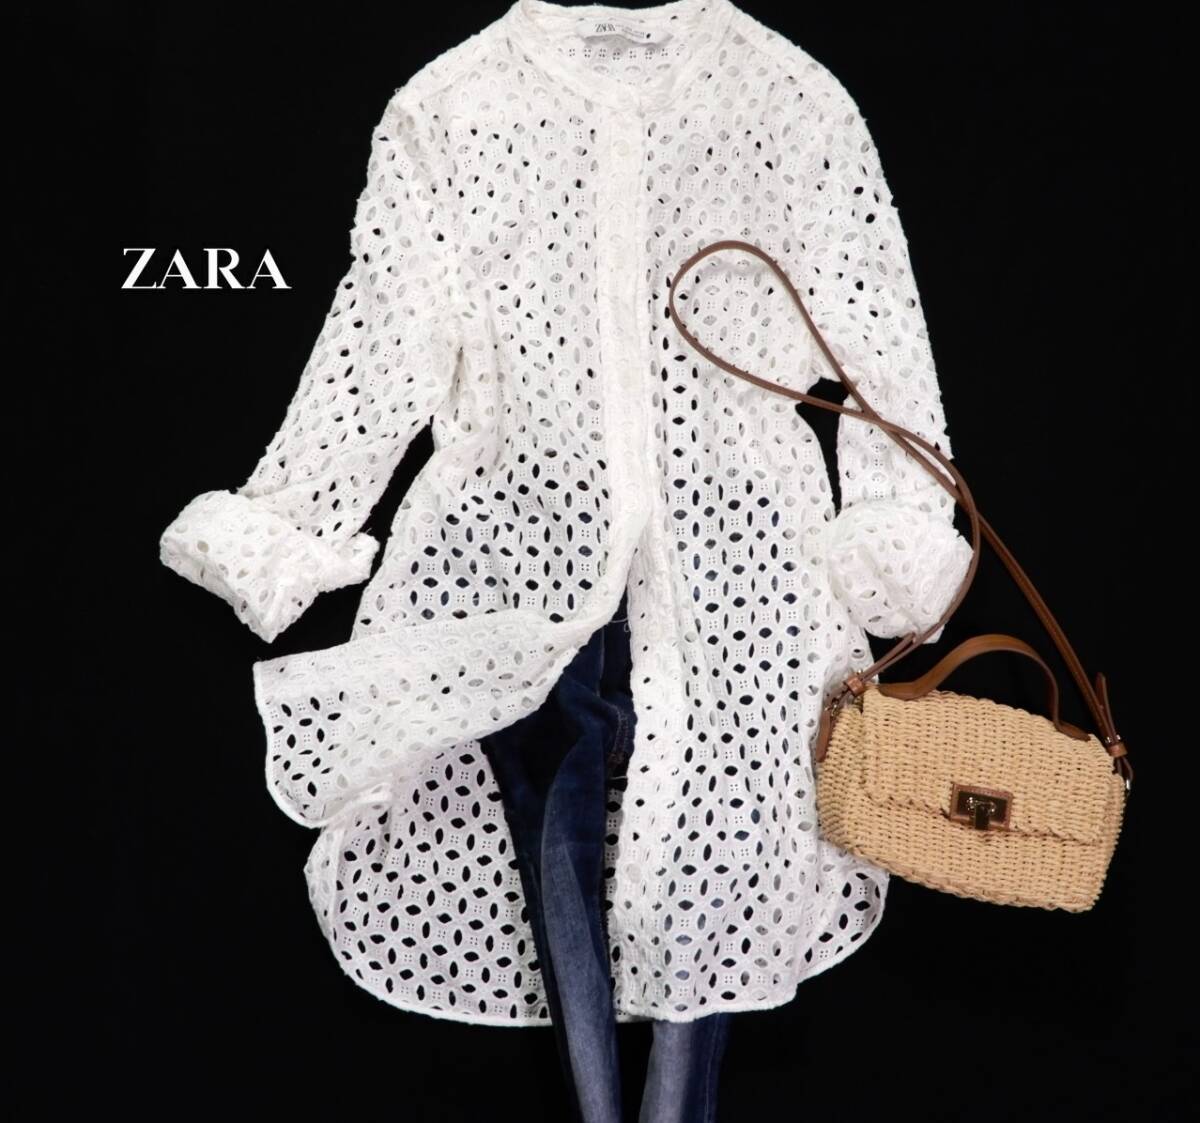 ザラ ZARA 大人可愛い☆ カットワーク刺繍 パンチングレース デザインシャツ チュニック S 羽織にも レイヤードコーデの画像1